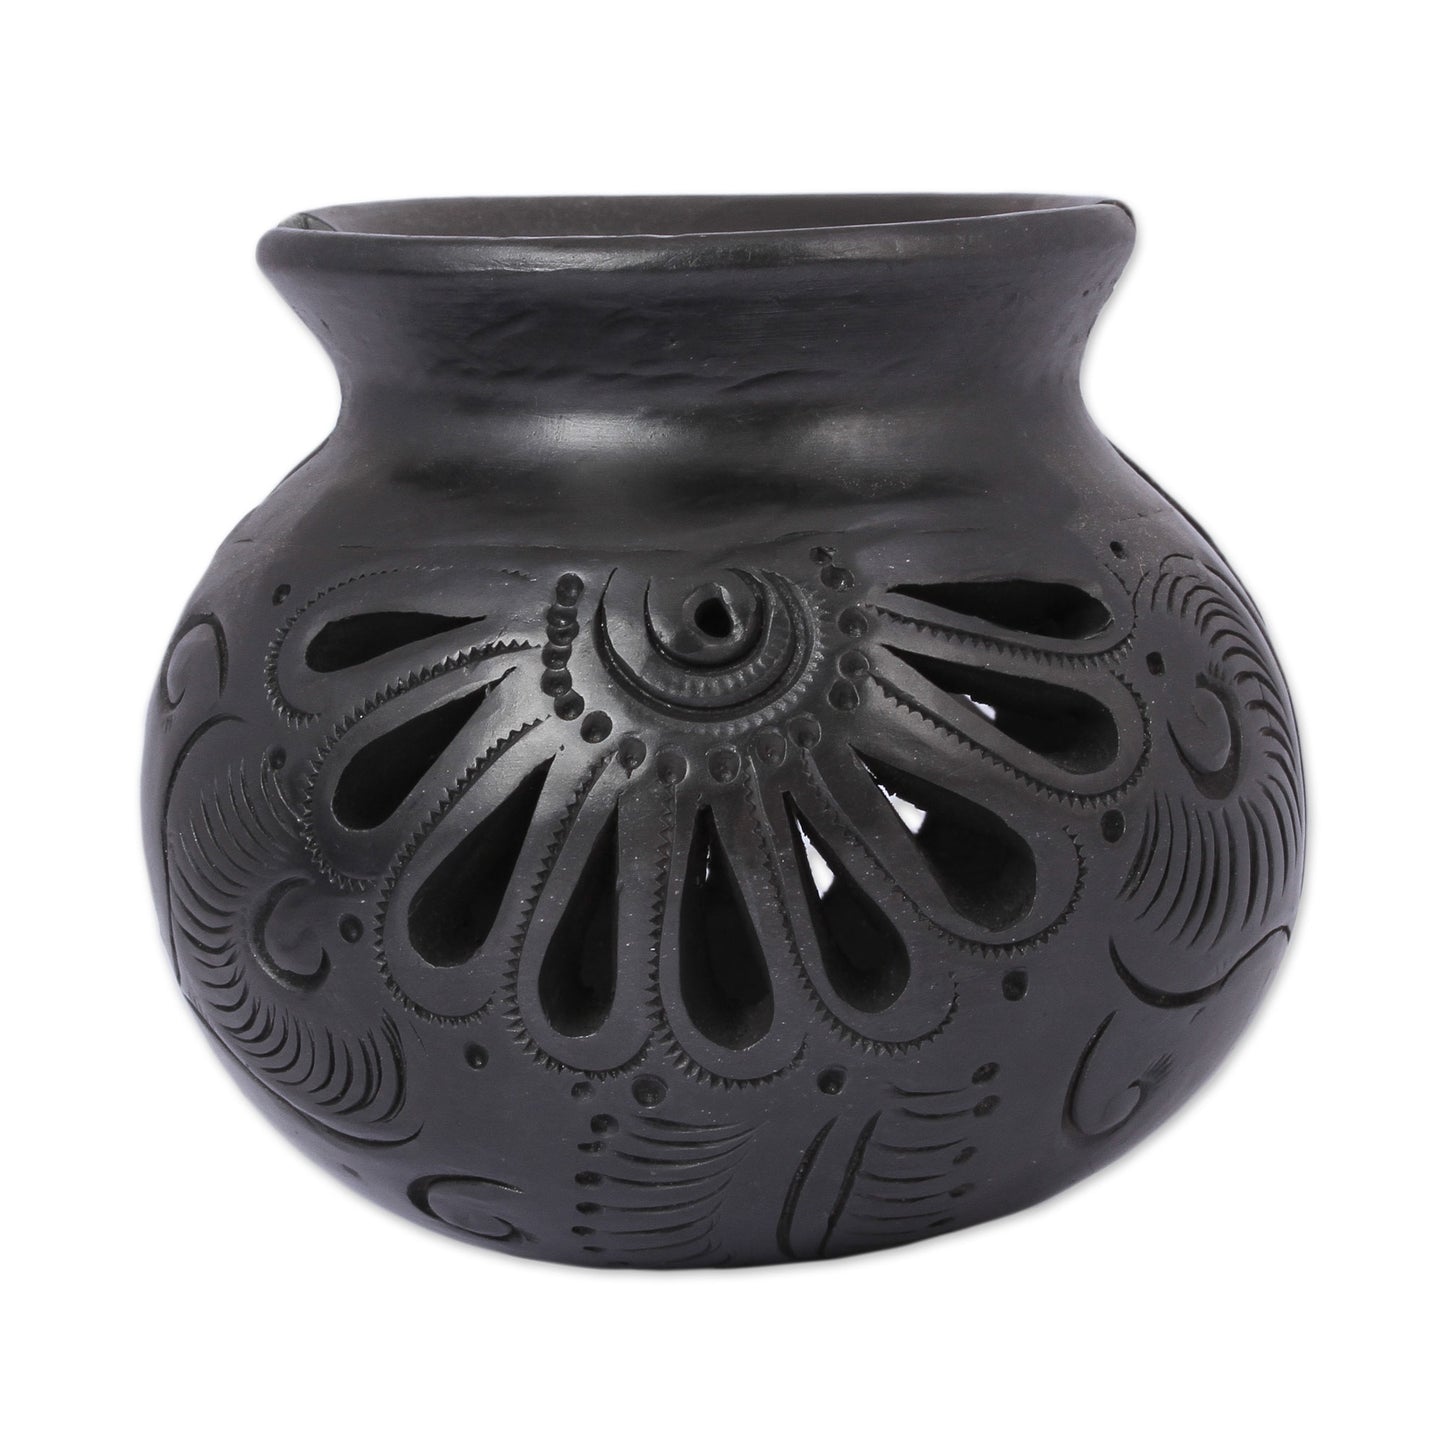 Fan Flower Oaxaca Barro Negro Ceramic Napkin Holder